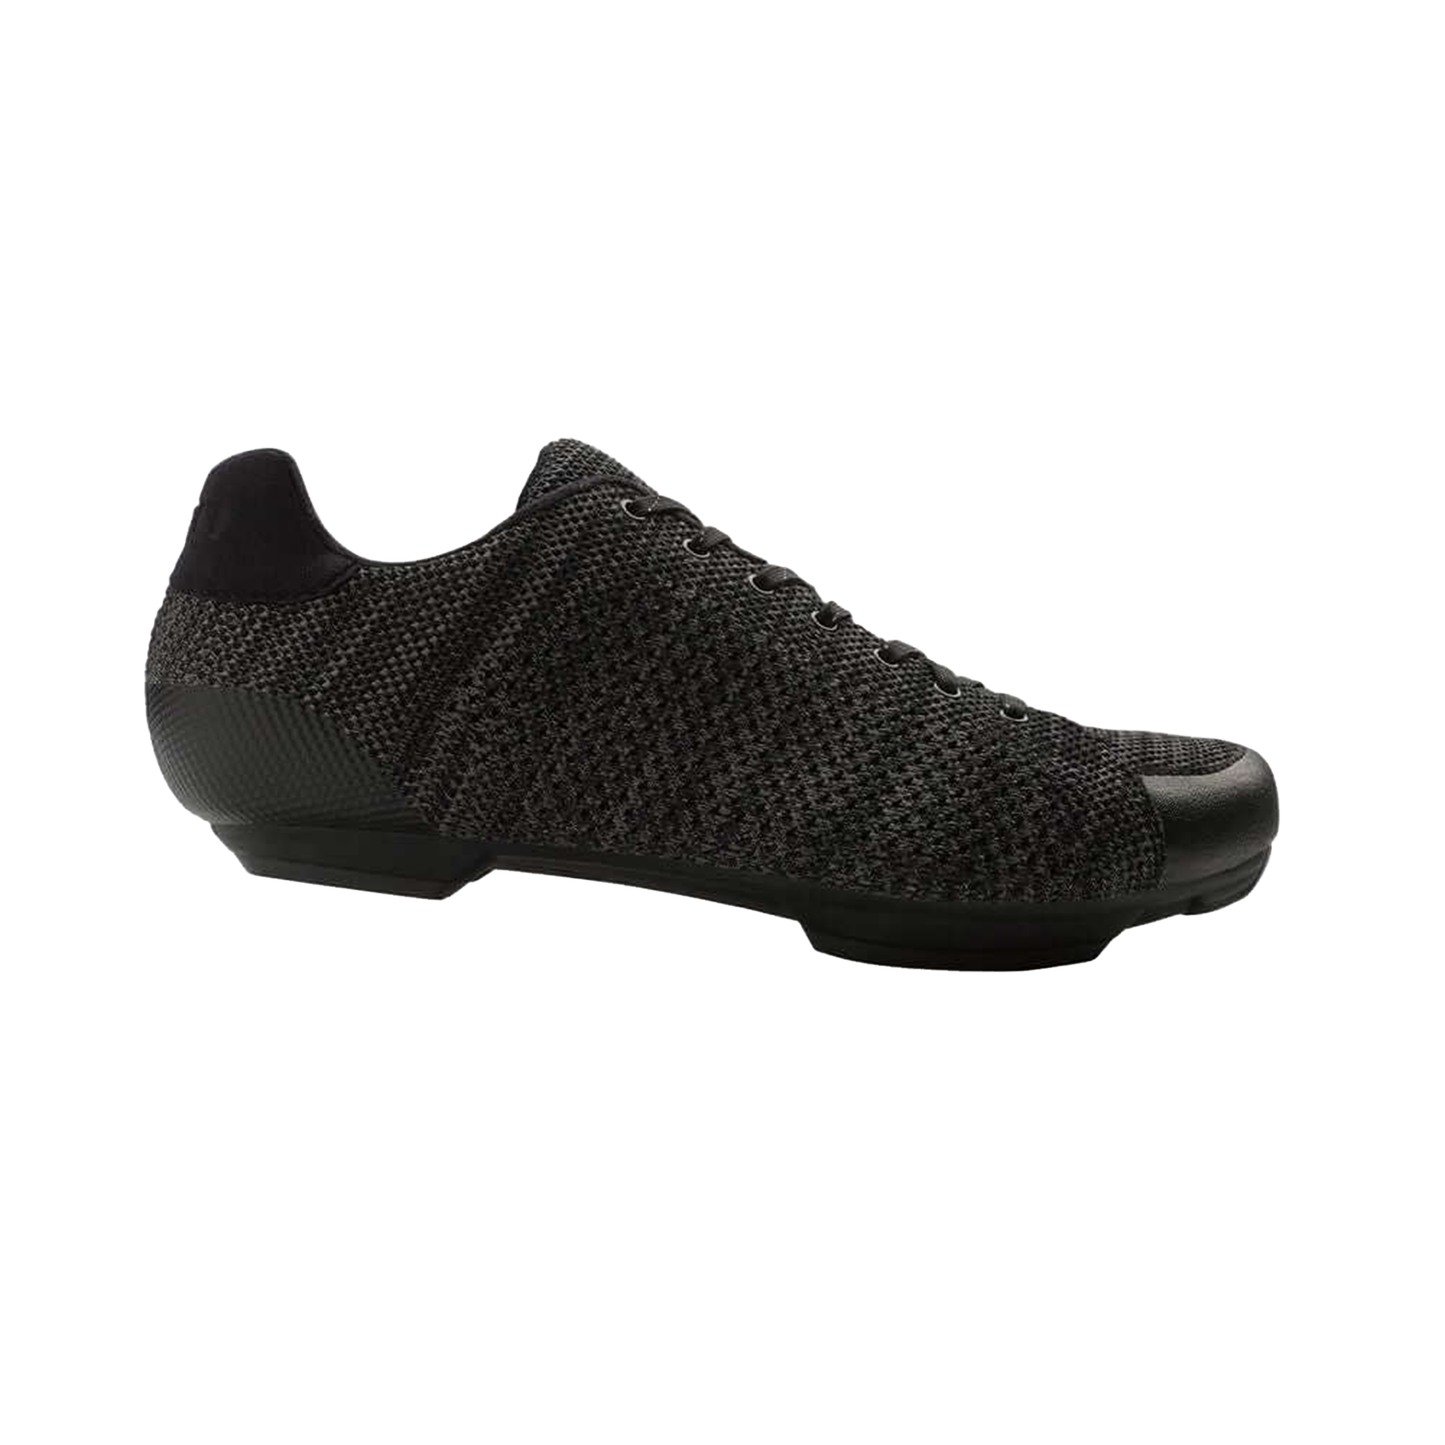 Giro Republic R Knit Shoe - OpenBox Black/Charcoal Heather Bike Shoes